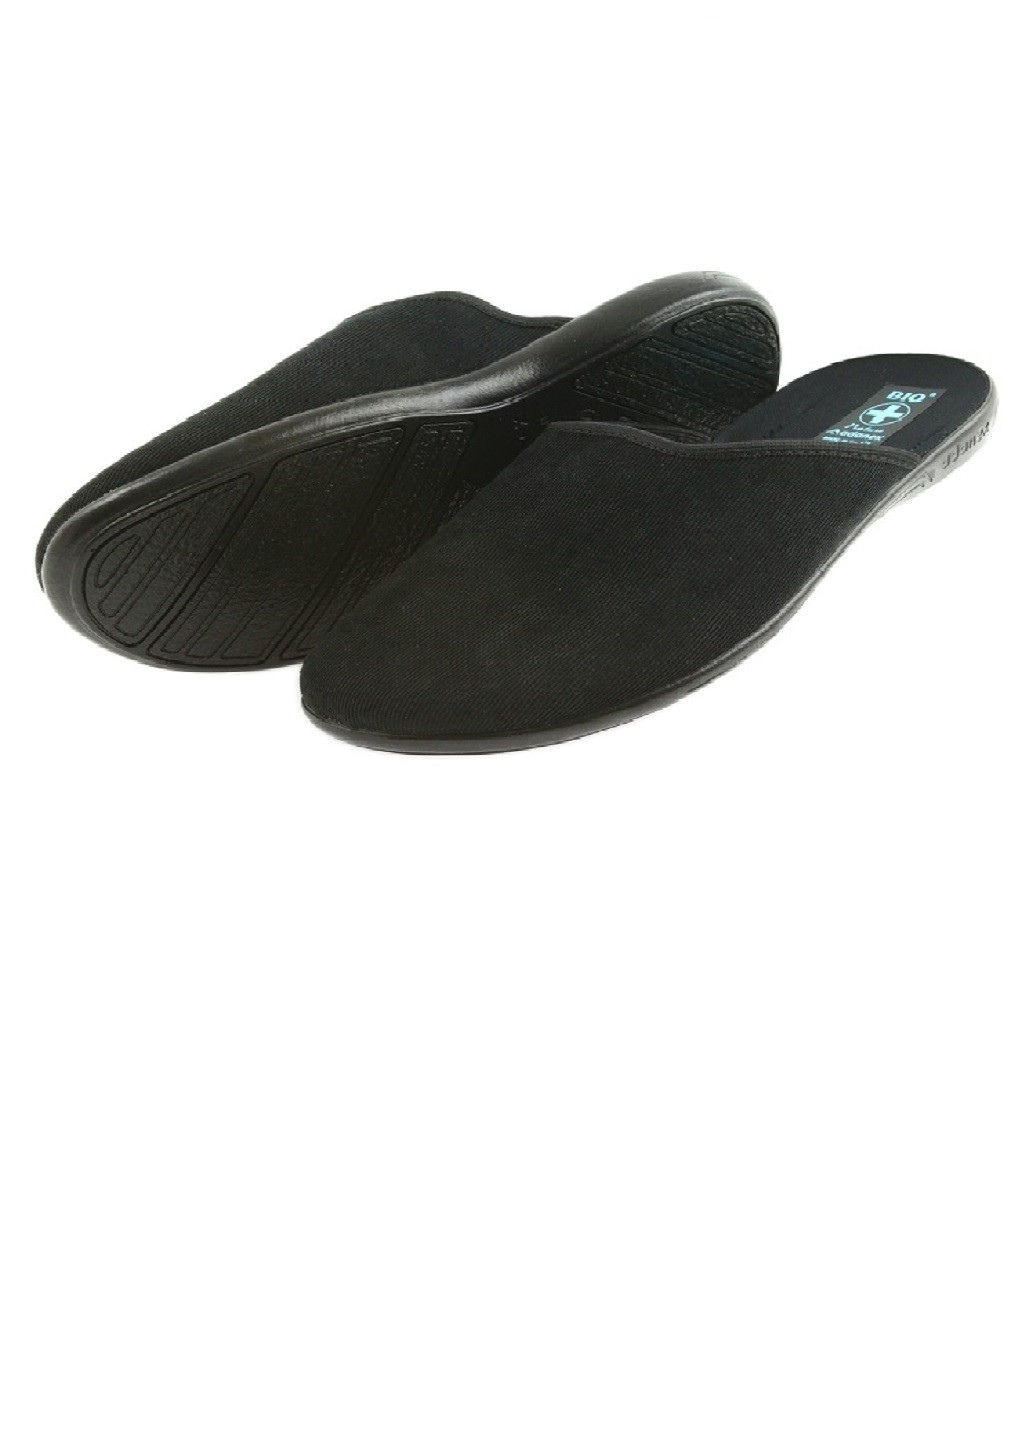 Взуття домашнє Adanex однотонний чорний домашній